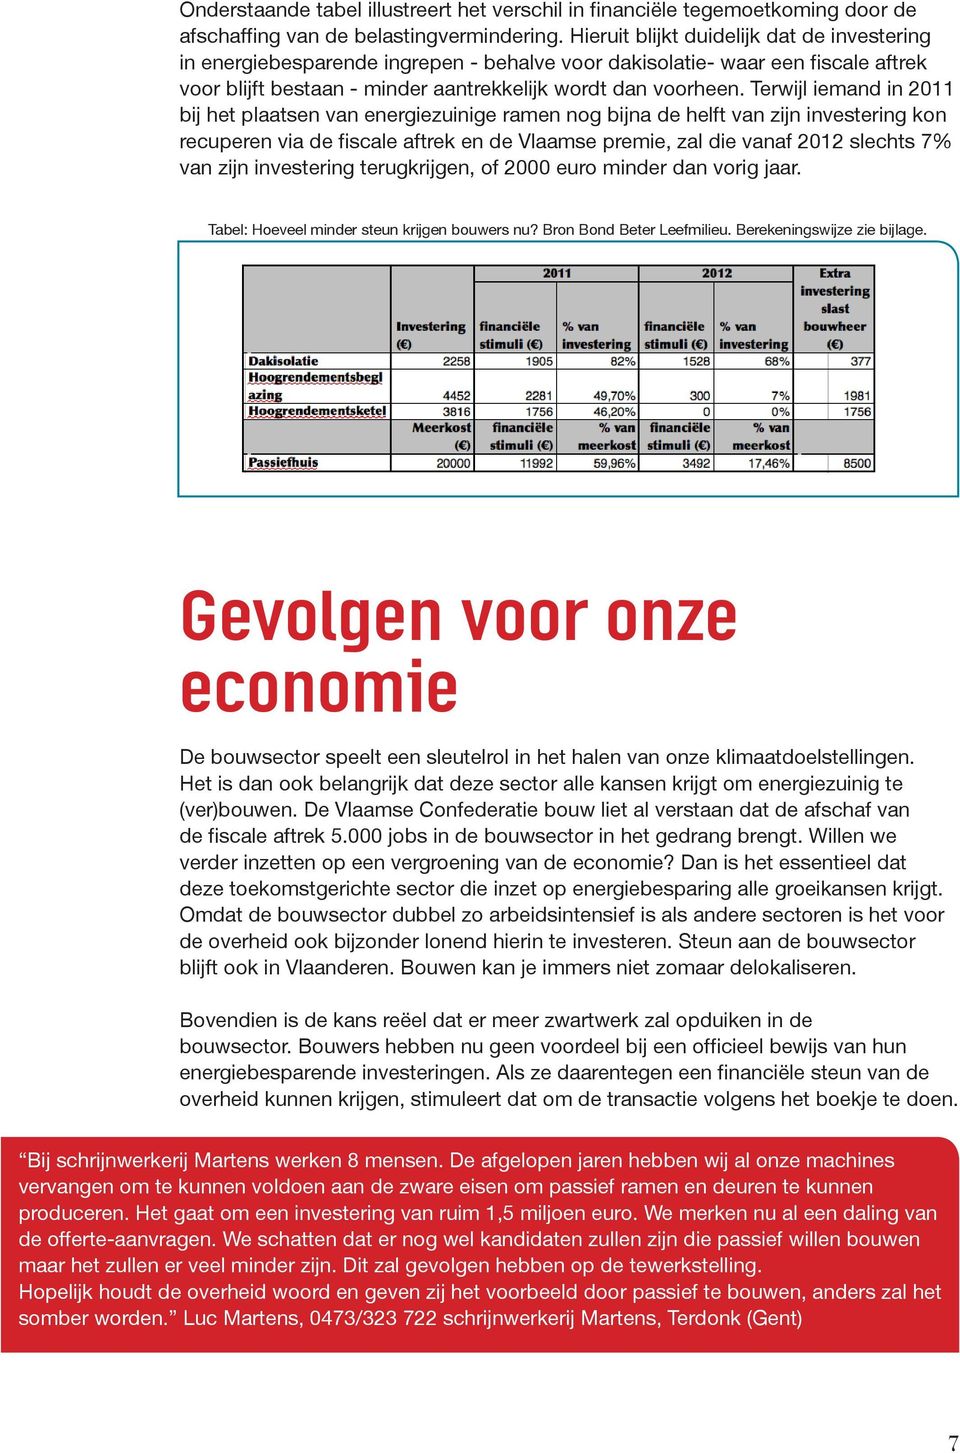 Terwijl iemand in 2011 bij het plaatsen van energiezuinige ramen nog bijna de helft van zijn investering kon recuperen via de fiscale aftrek en de Vlaamse premie, zal die vanaf 2012 slechts 7% van